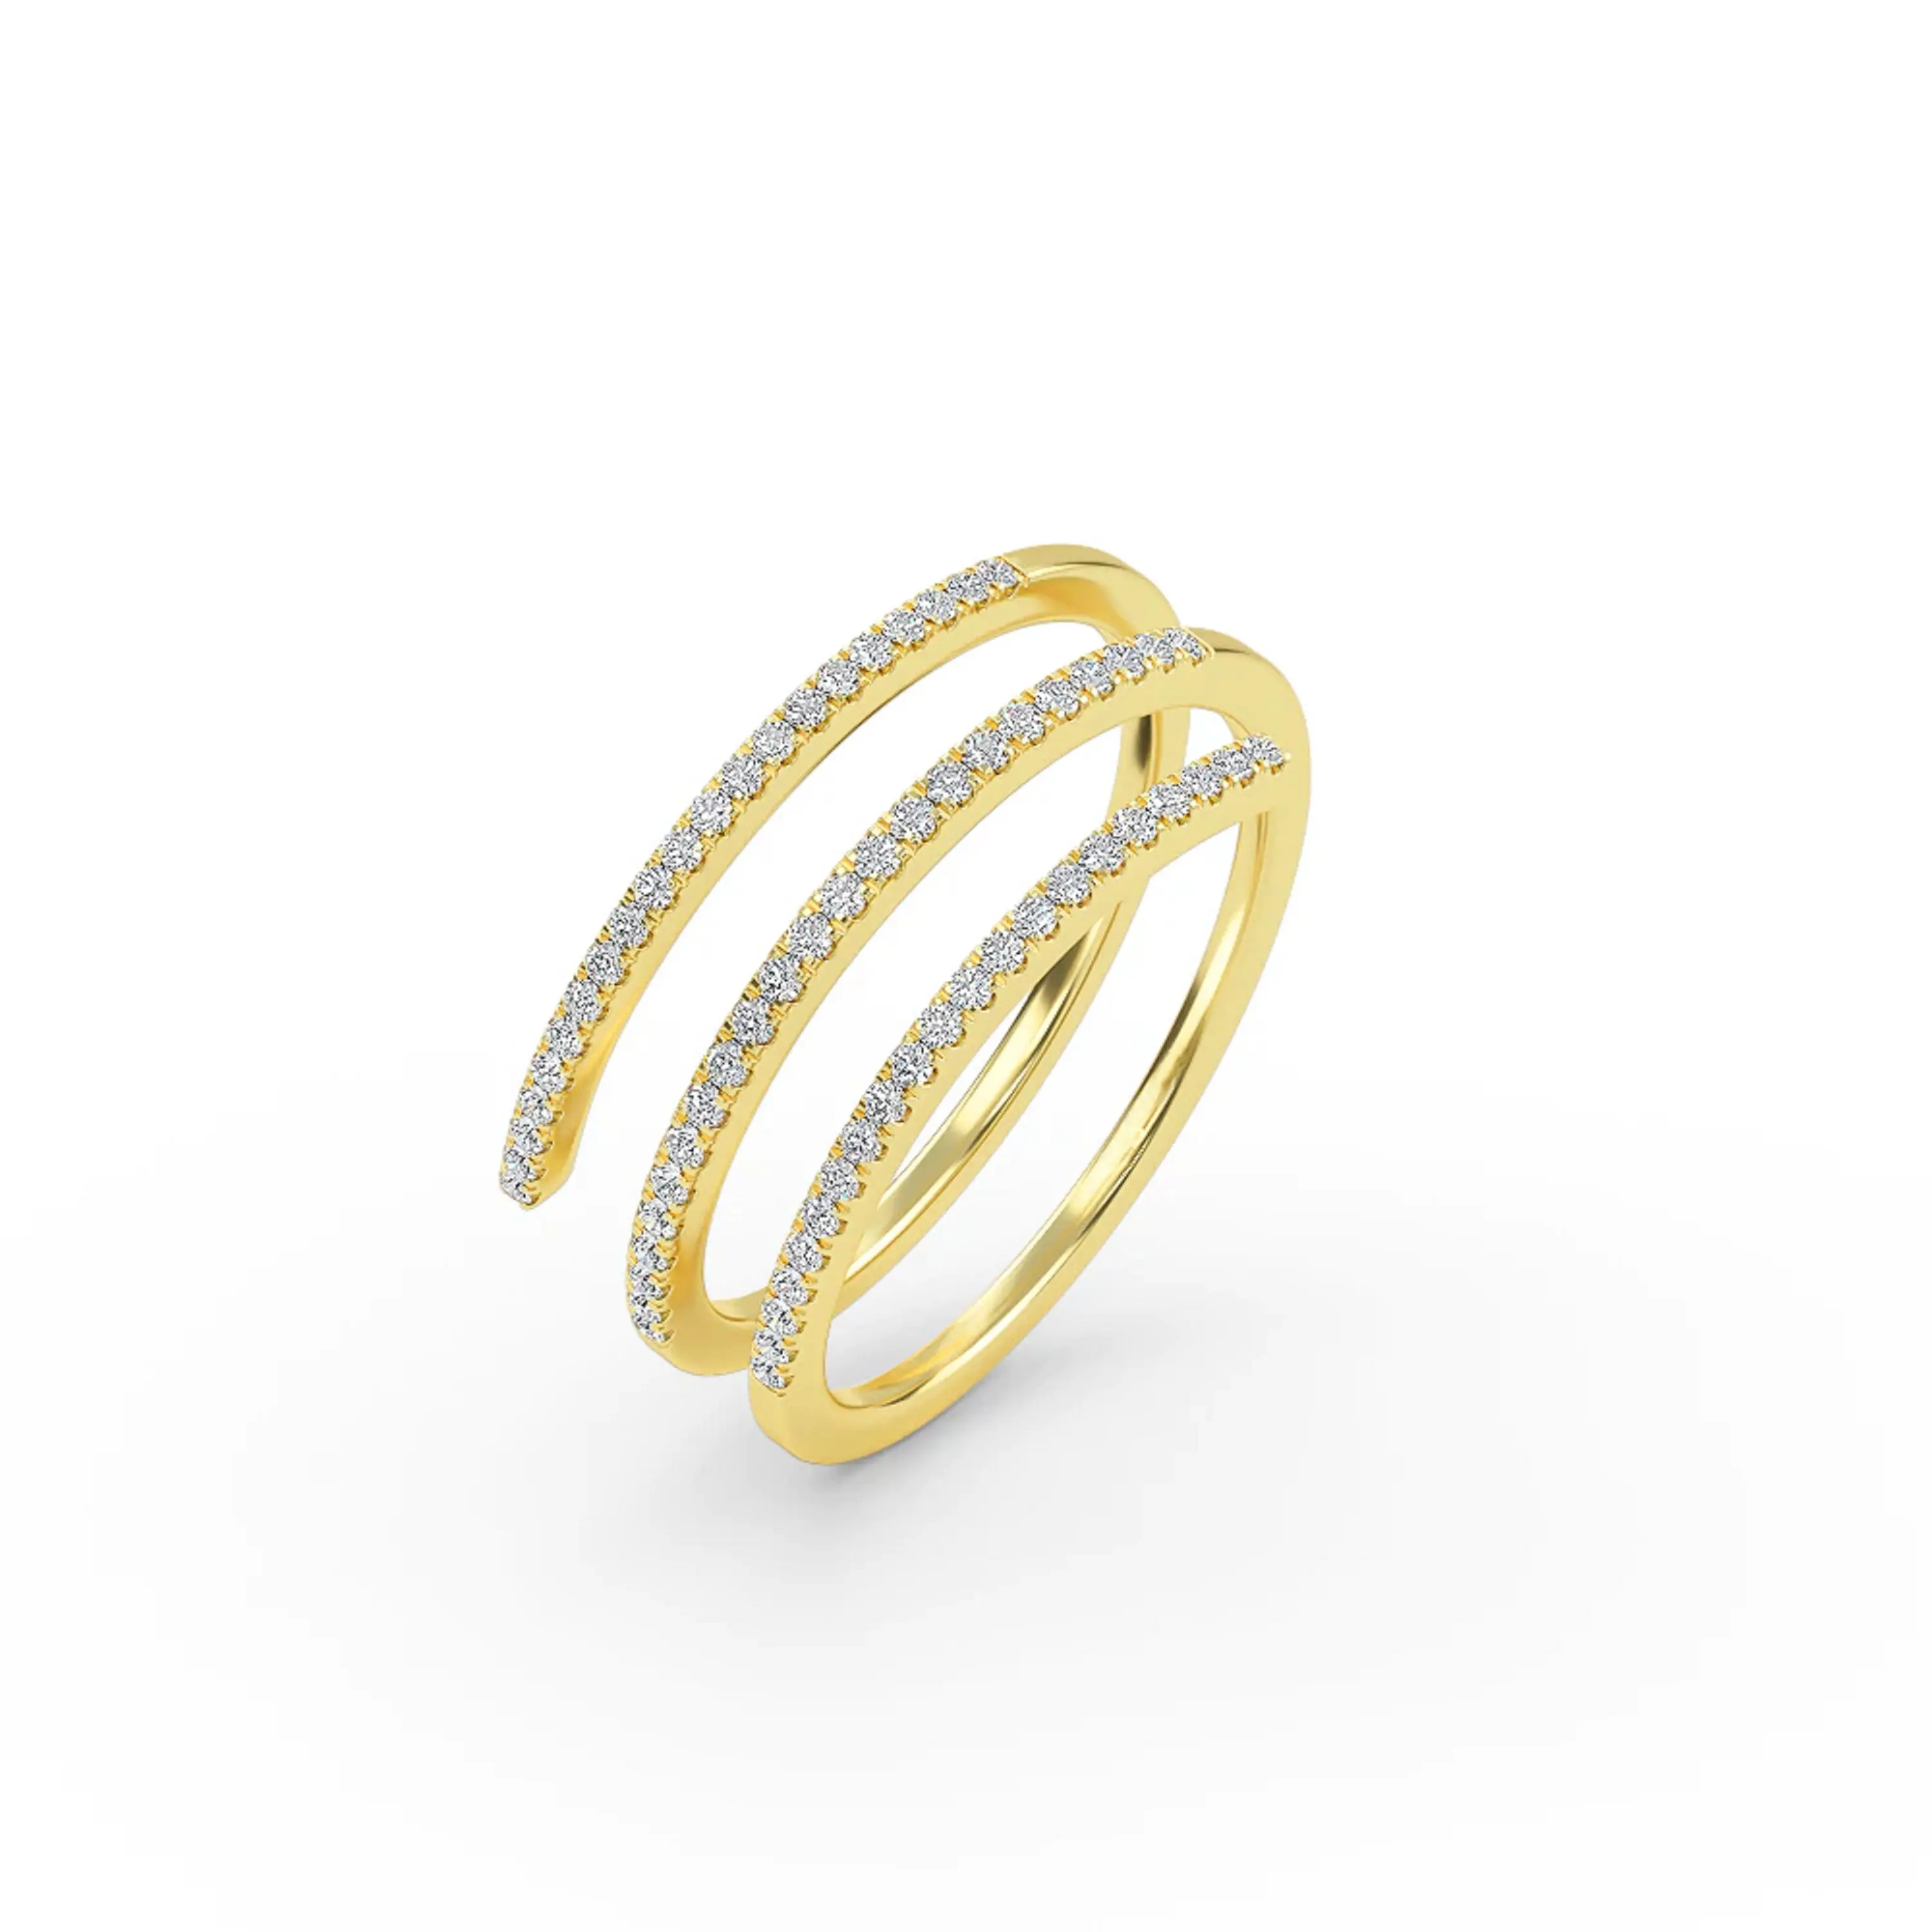 Bestverkopende Fijne Sieraden Moissanite Diamant Trouwringen 925 Sterling Zilveren Ringen Voor Mannen Van Indiase Exporteur